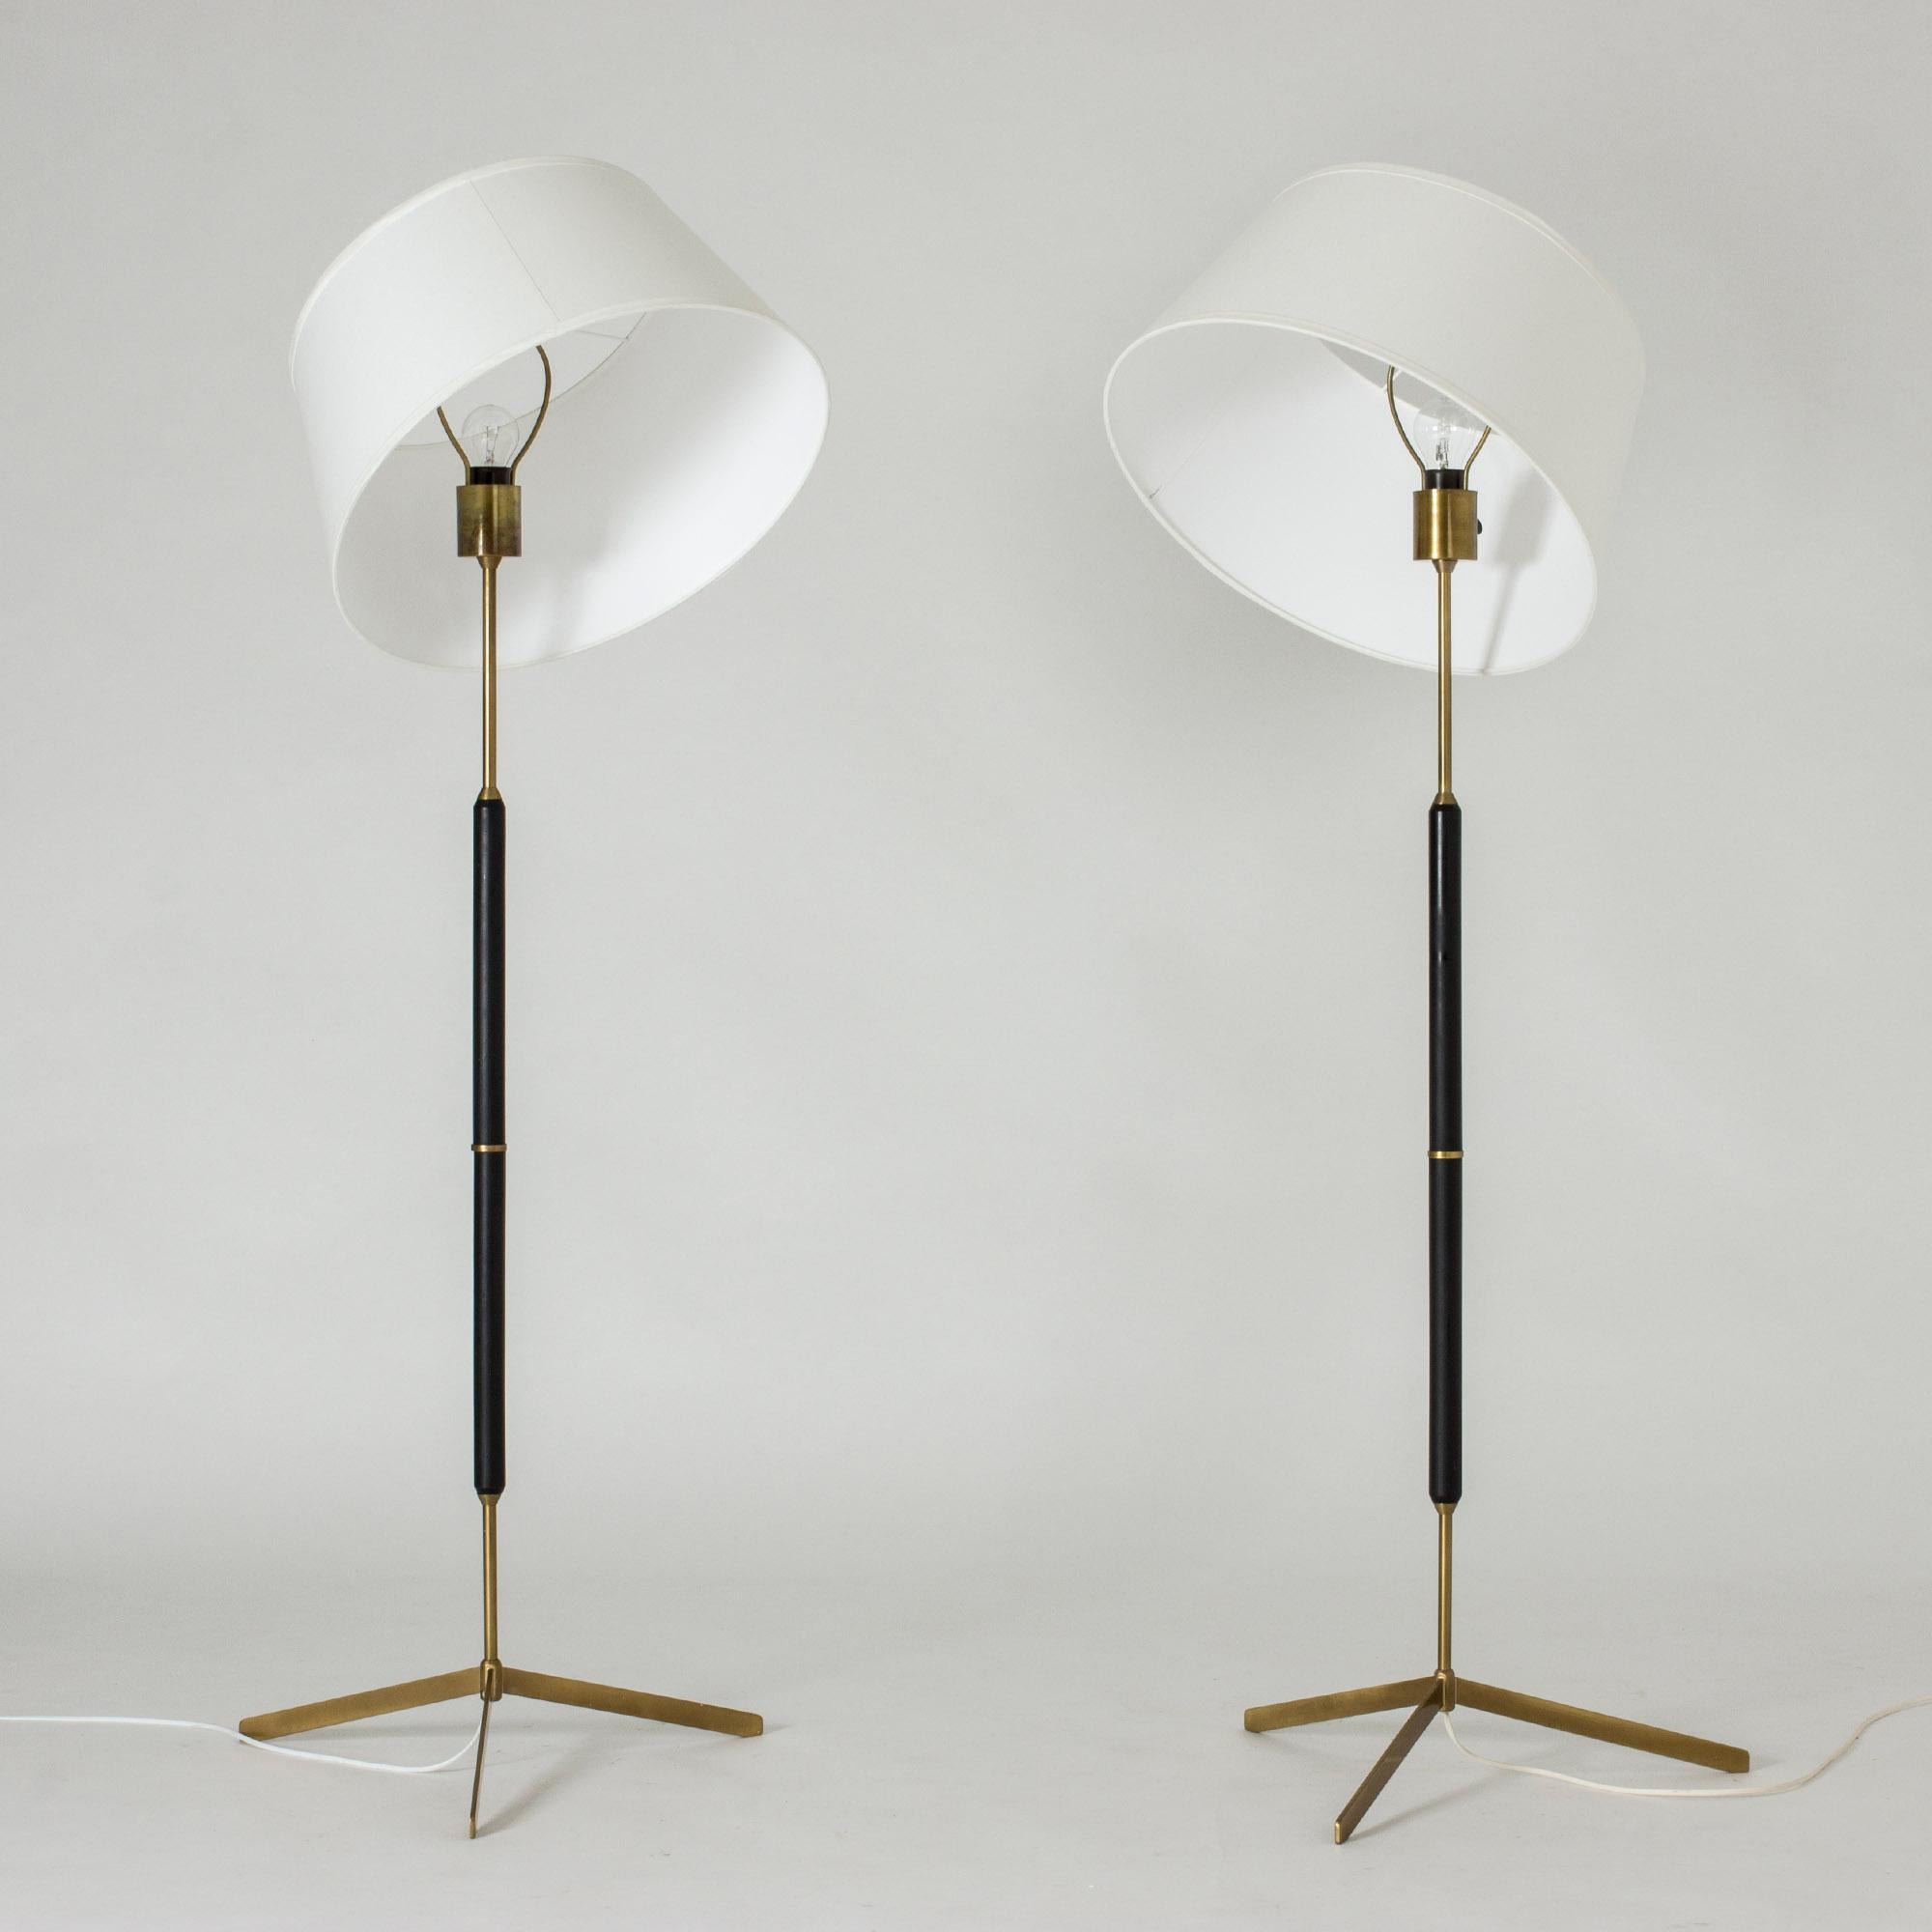 Très élégante paire de lampadaires de l'éditeur suédois Bergboms avec sa base tripode, des années 1950. L'assemblage des matériaux avec la tige en bois noir, la structure et l'anneau en laiton lui confère son esthétique originale et moderniste.